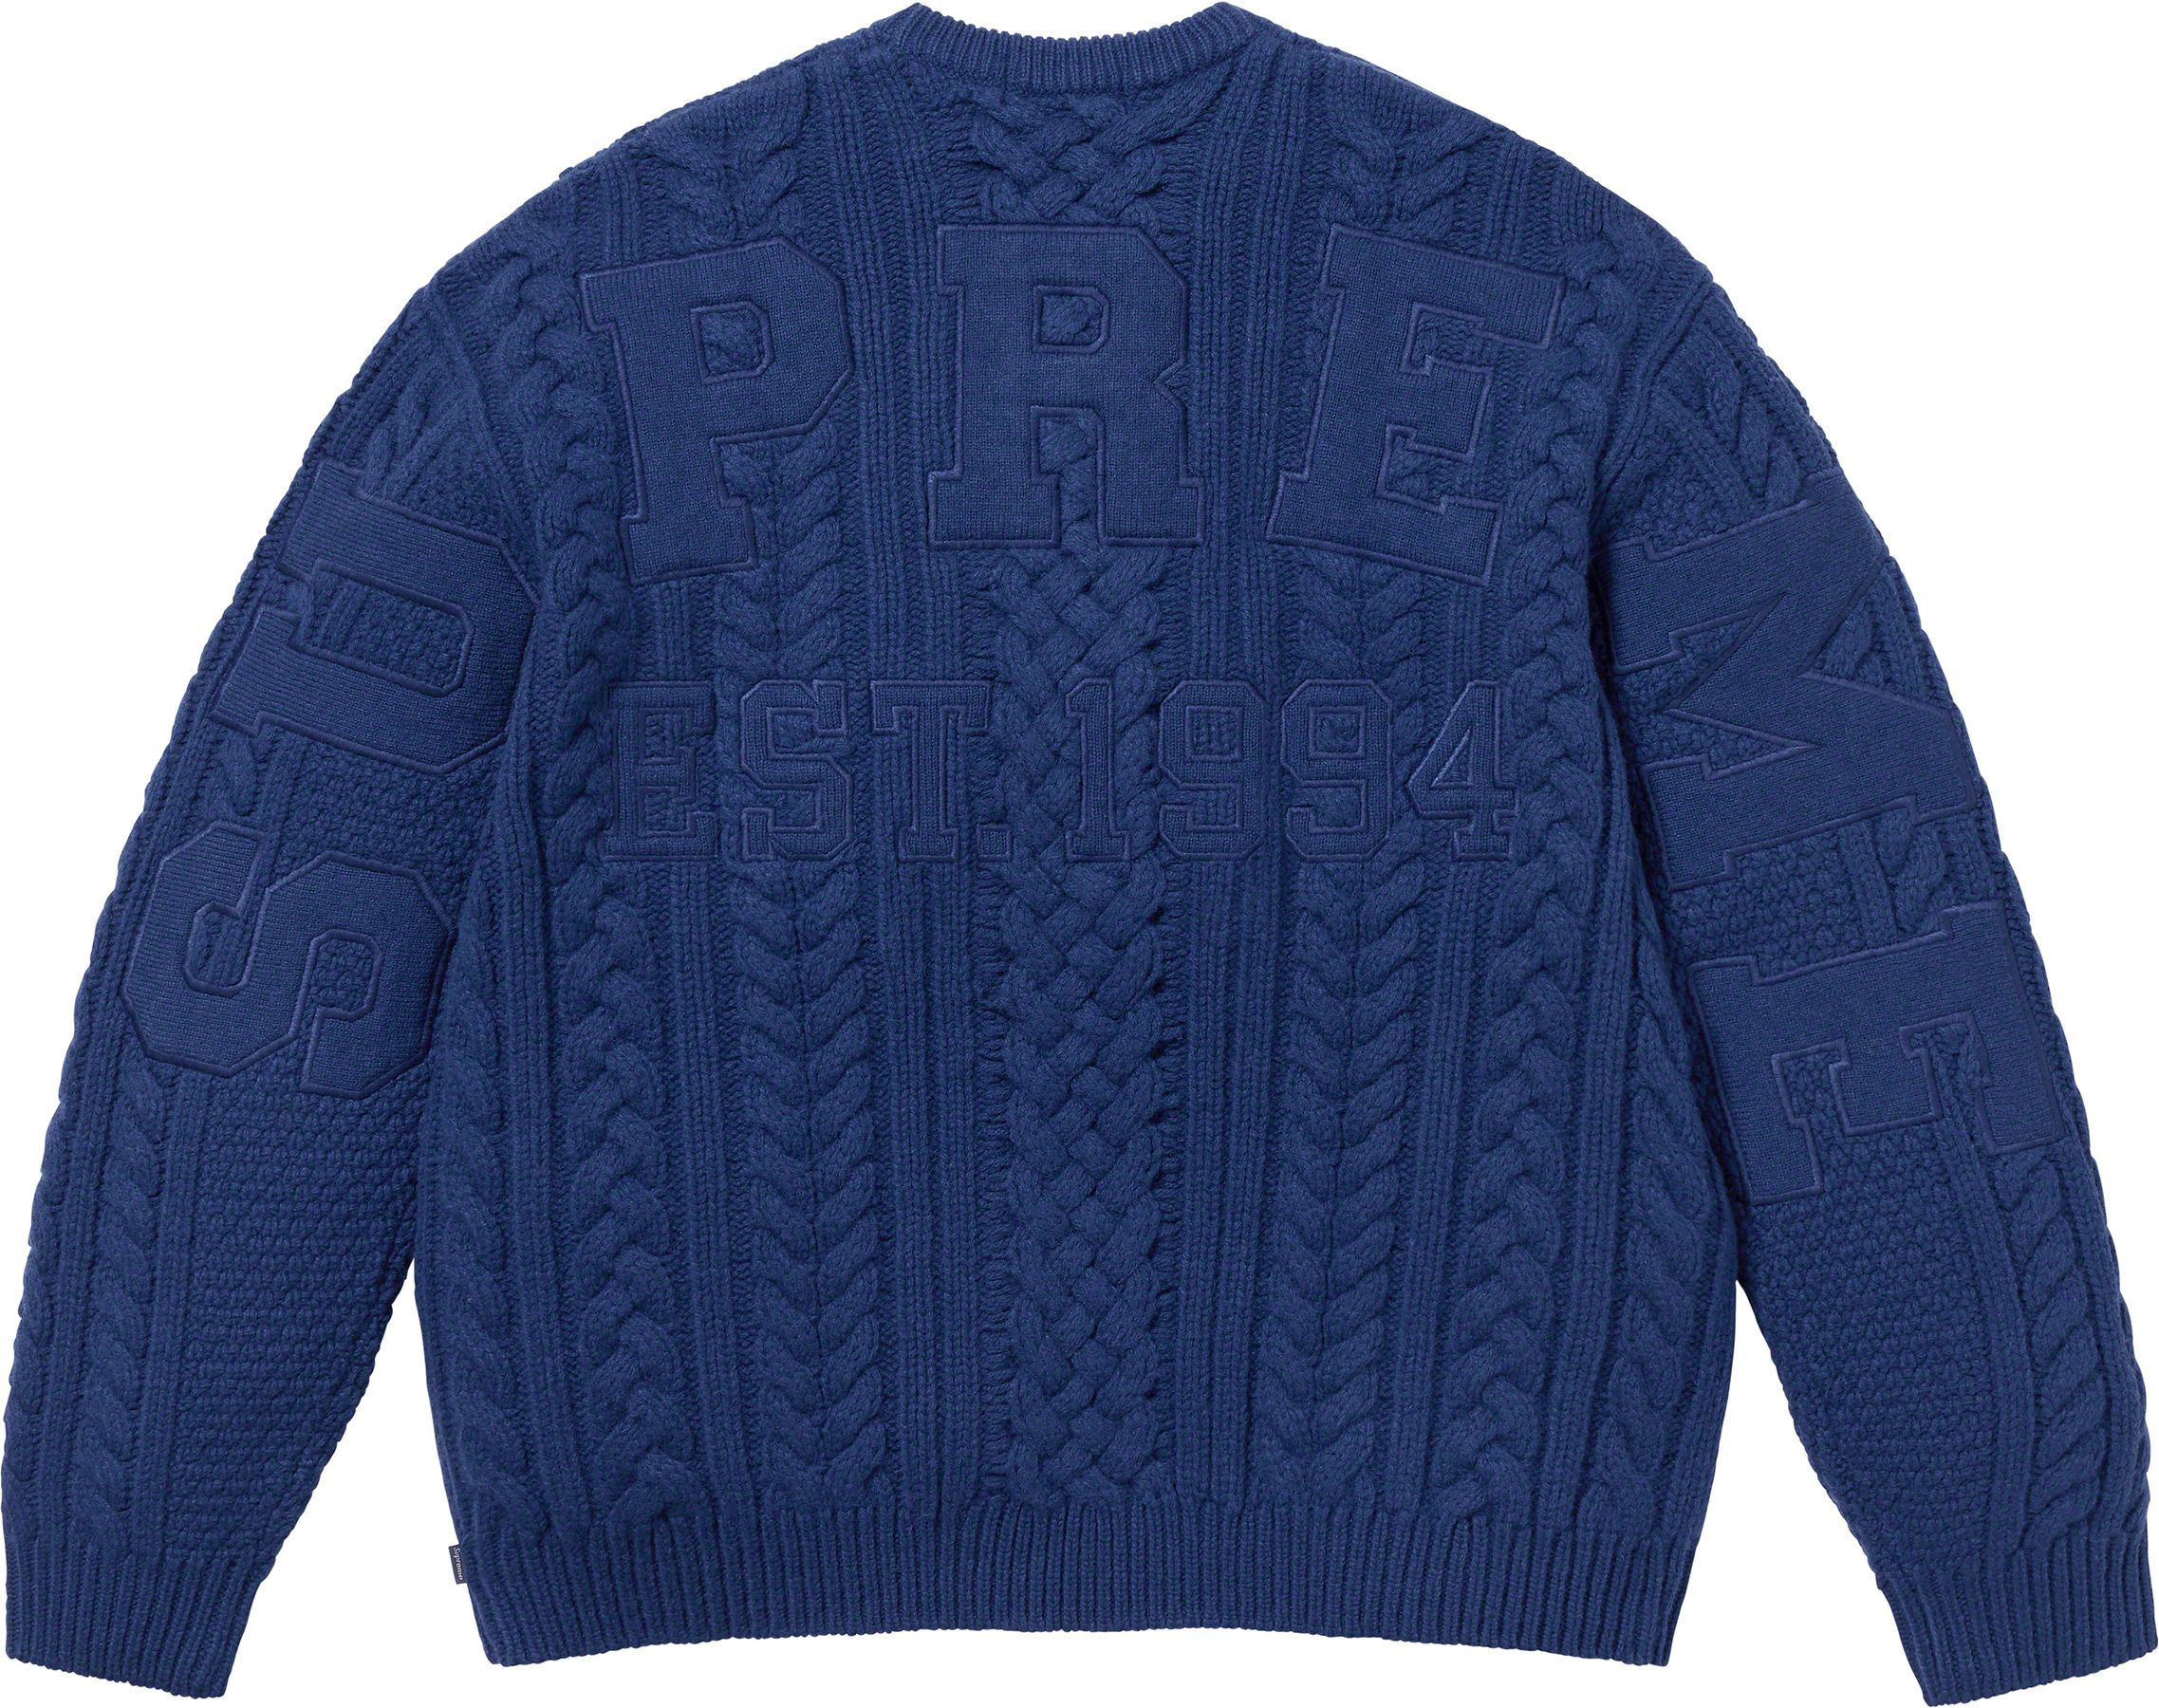 18,450円Supreme Applique Cable Knit Sweater Navy